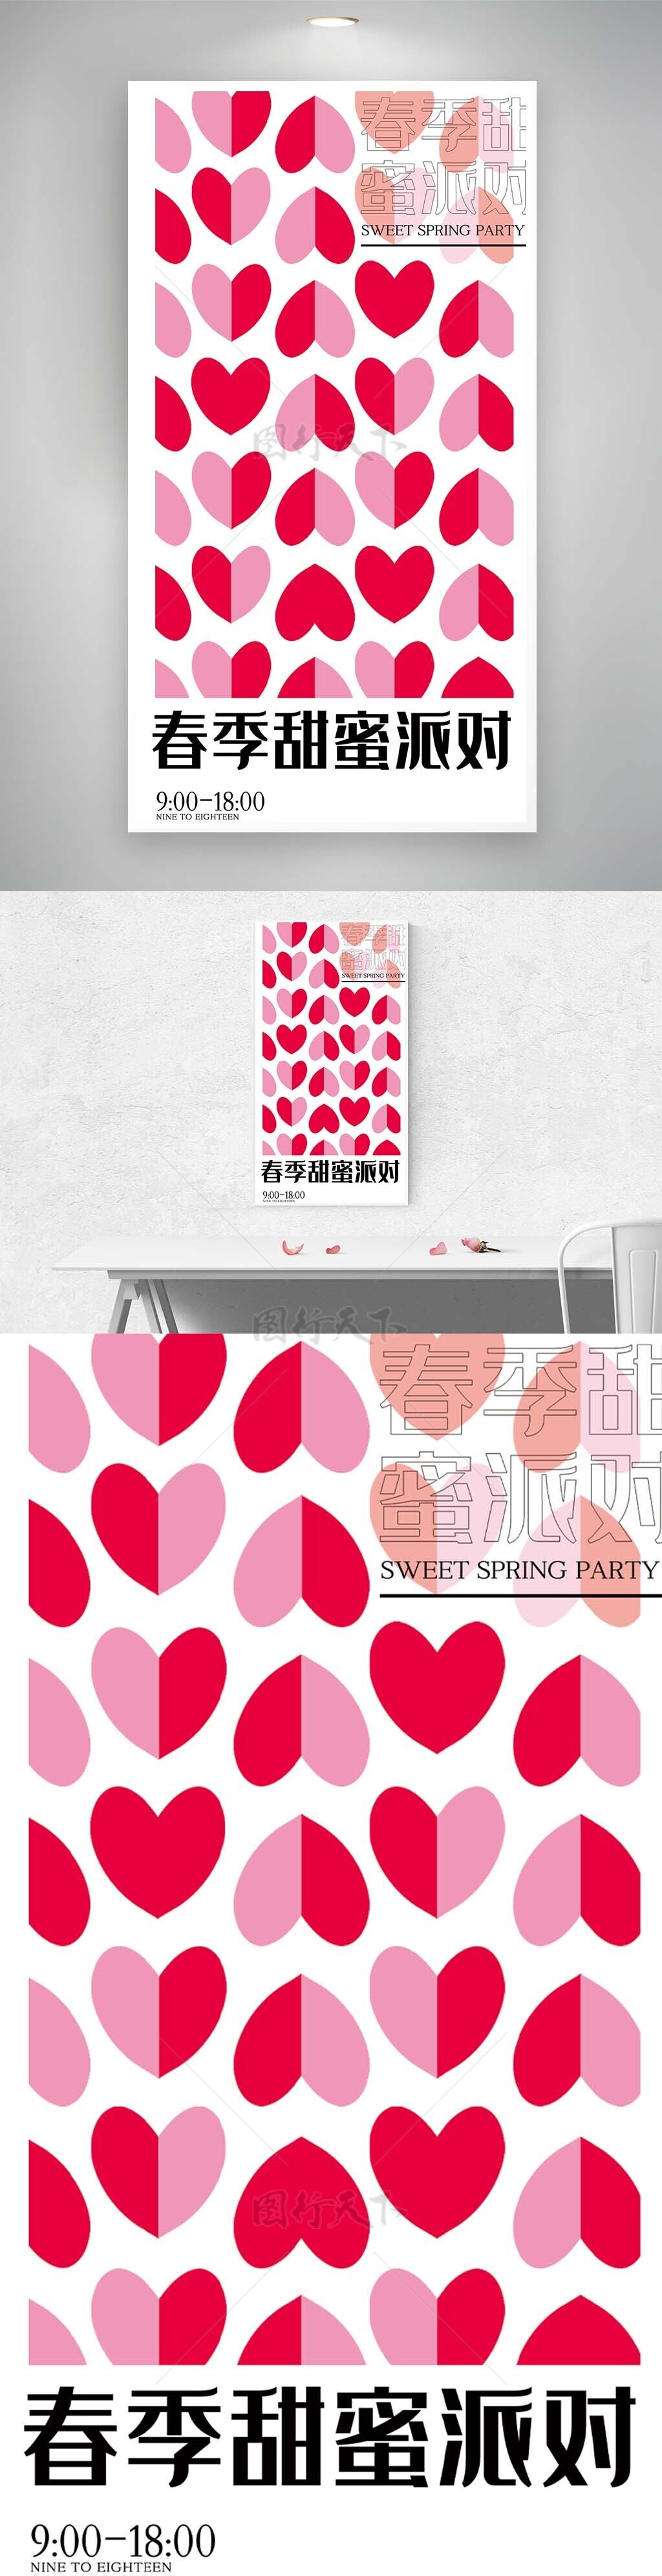 创意爱心平铺春季派对主题海报设计